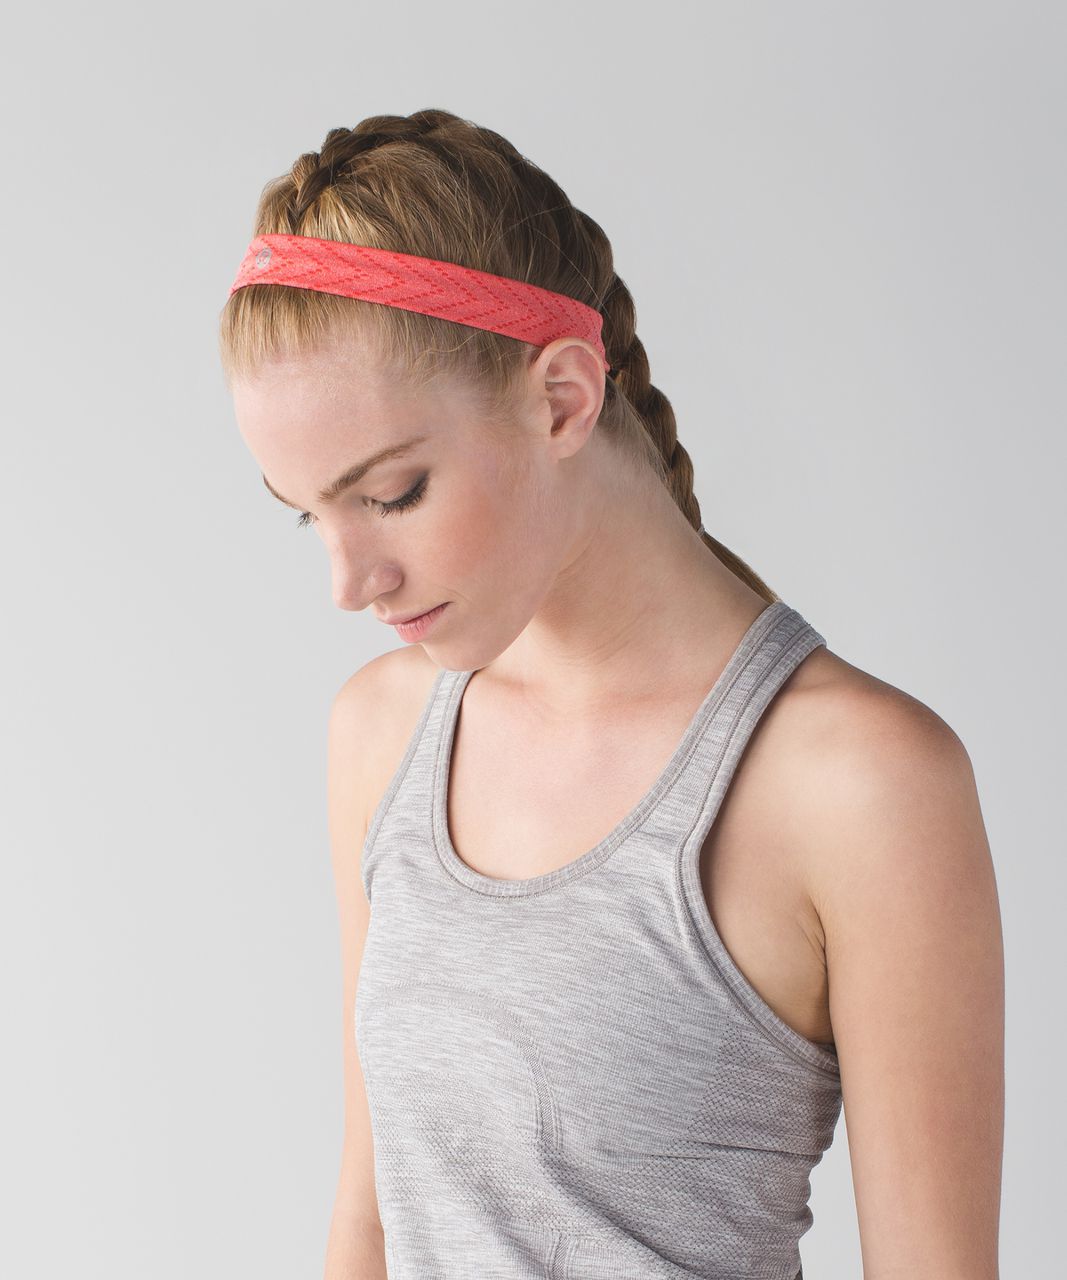 Lululemon Cardio Cross Trainer Headband - Heathered Alarming